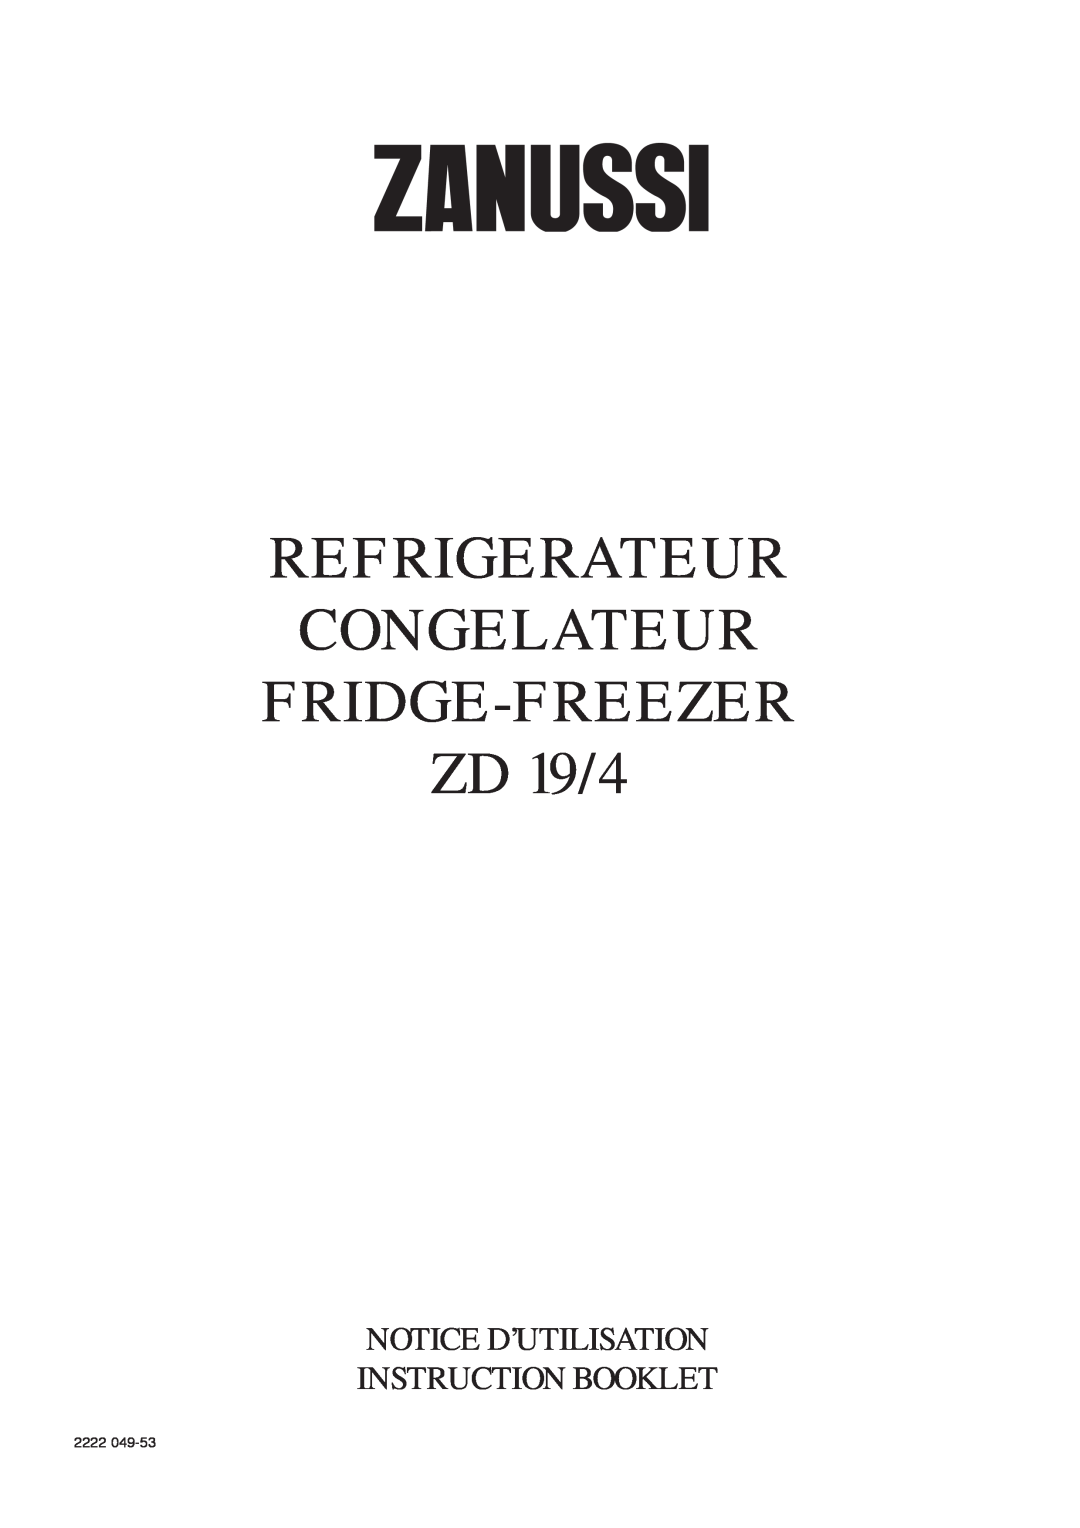 Zanussi manual REFRIGERATEUR CONGELATEUR FRIDGE-FREEZER ZD 19/4, Notice D’Utilisation Instruction Booklet, 2222 